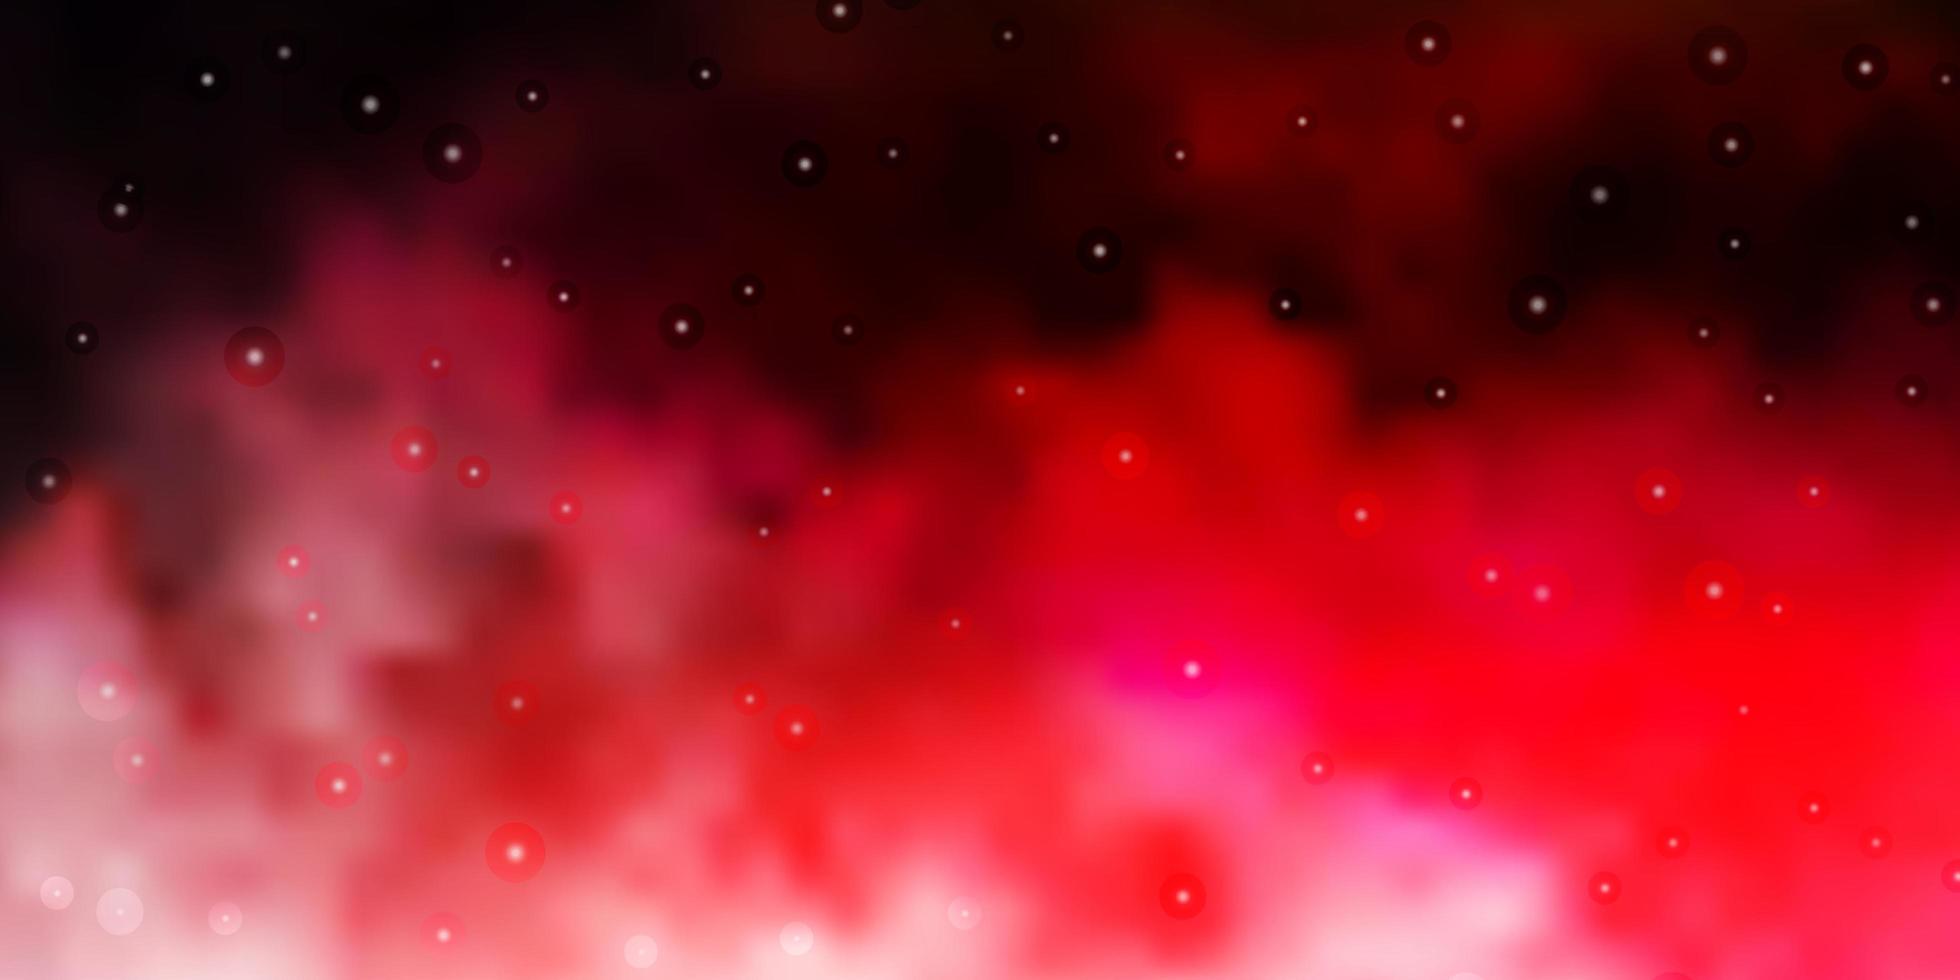 layout de vetor rosa claro e vermelho com estrelas brilhantes.